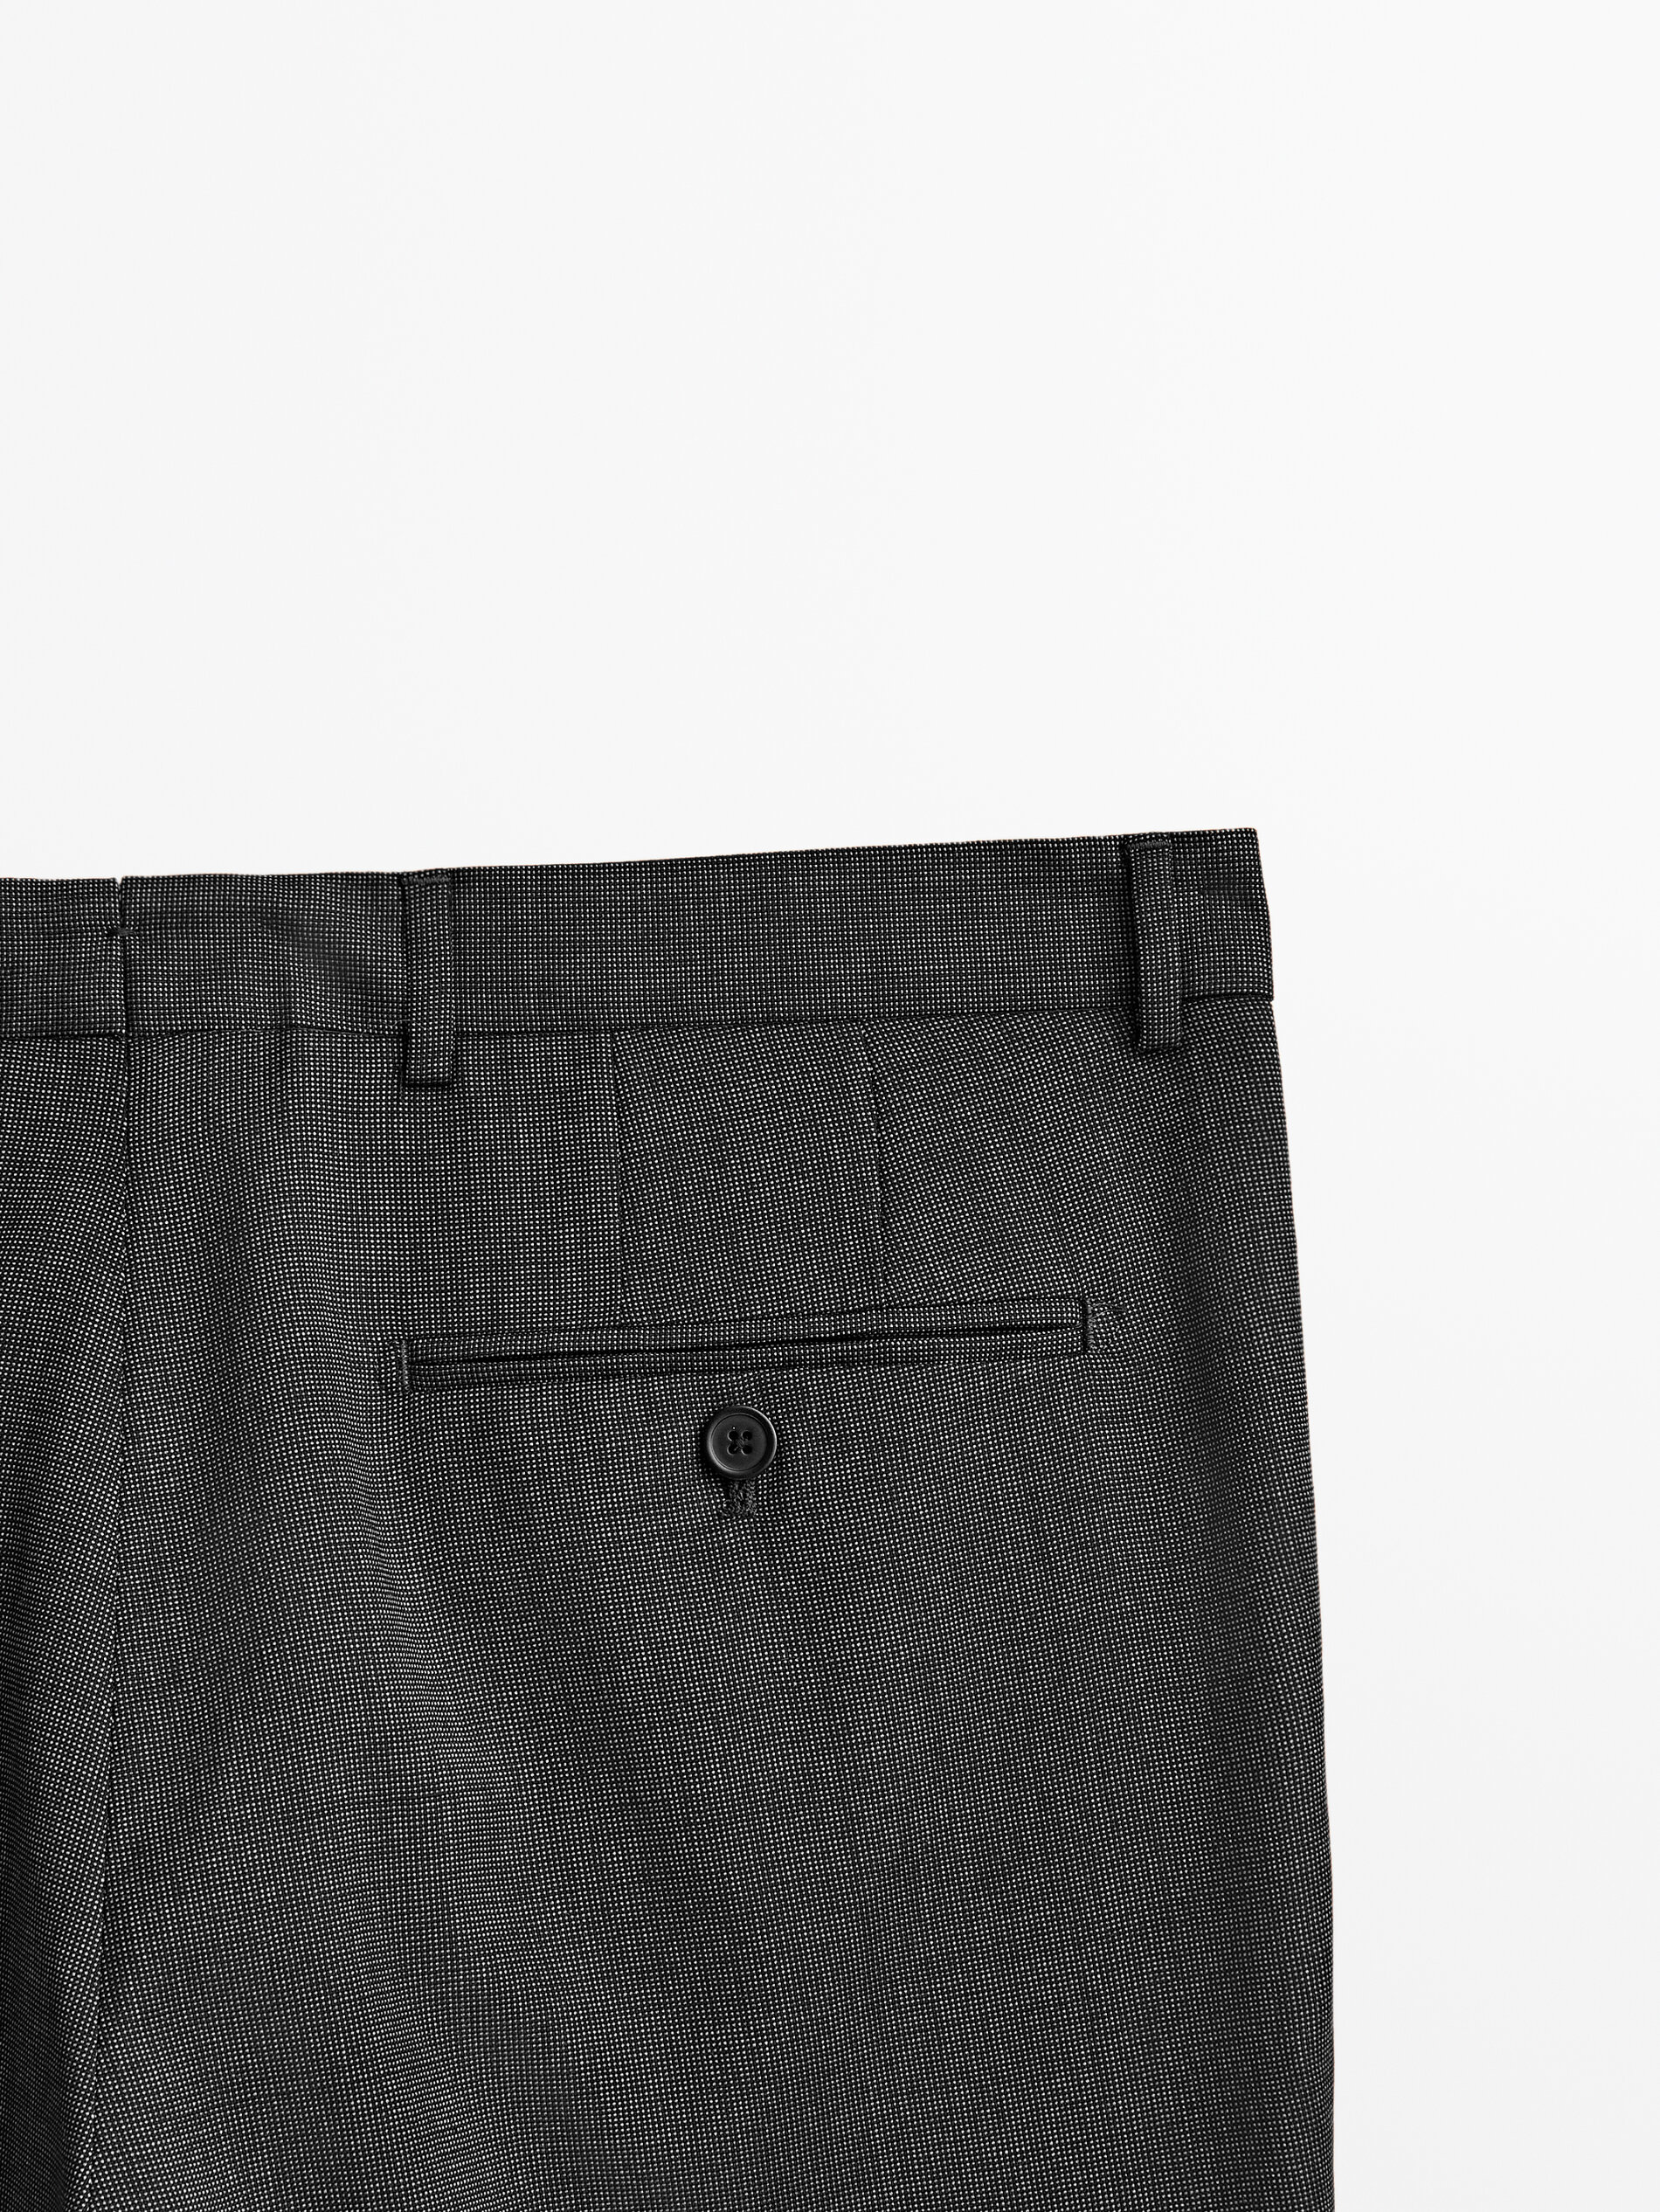 Charcoal Grey Smarts  CustomFit Mens Italian Wool Trousers  SPOKE   SPOKE